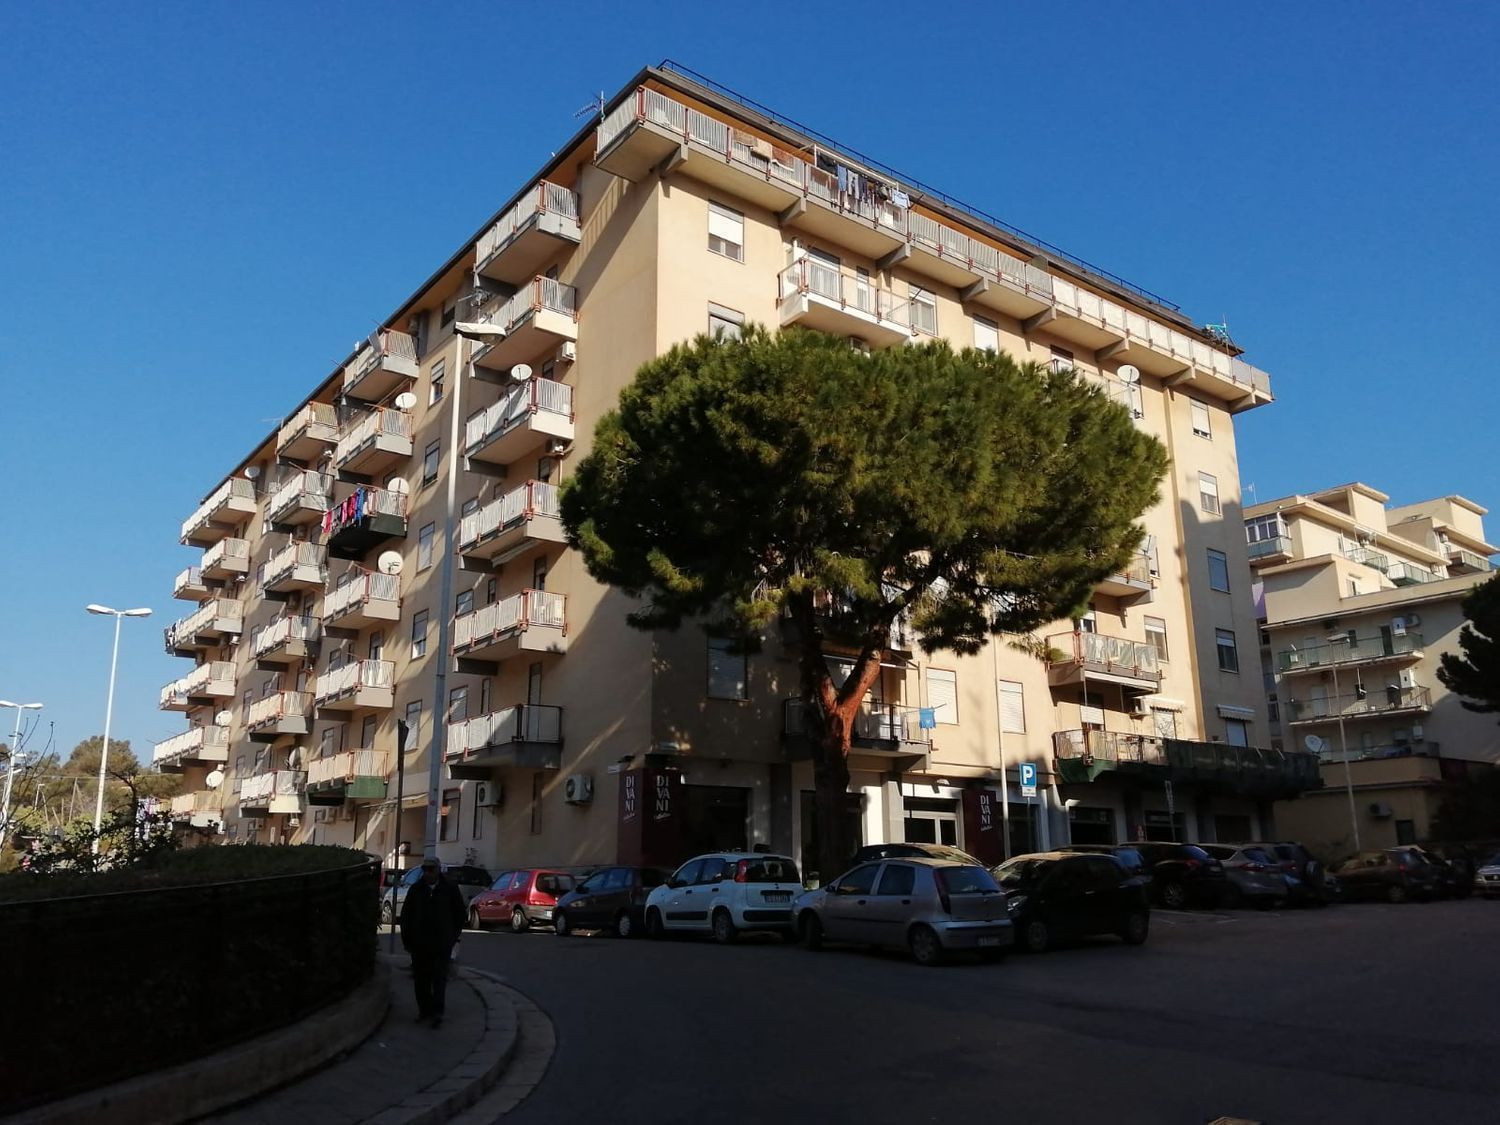 Appartamento in vendita a Termini Imerese, 4 locali, prezzo € 50.000 | PortaleAgenzieImmobiliari.it